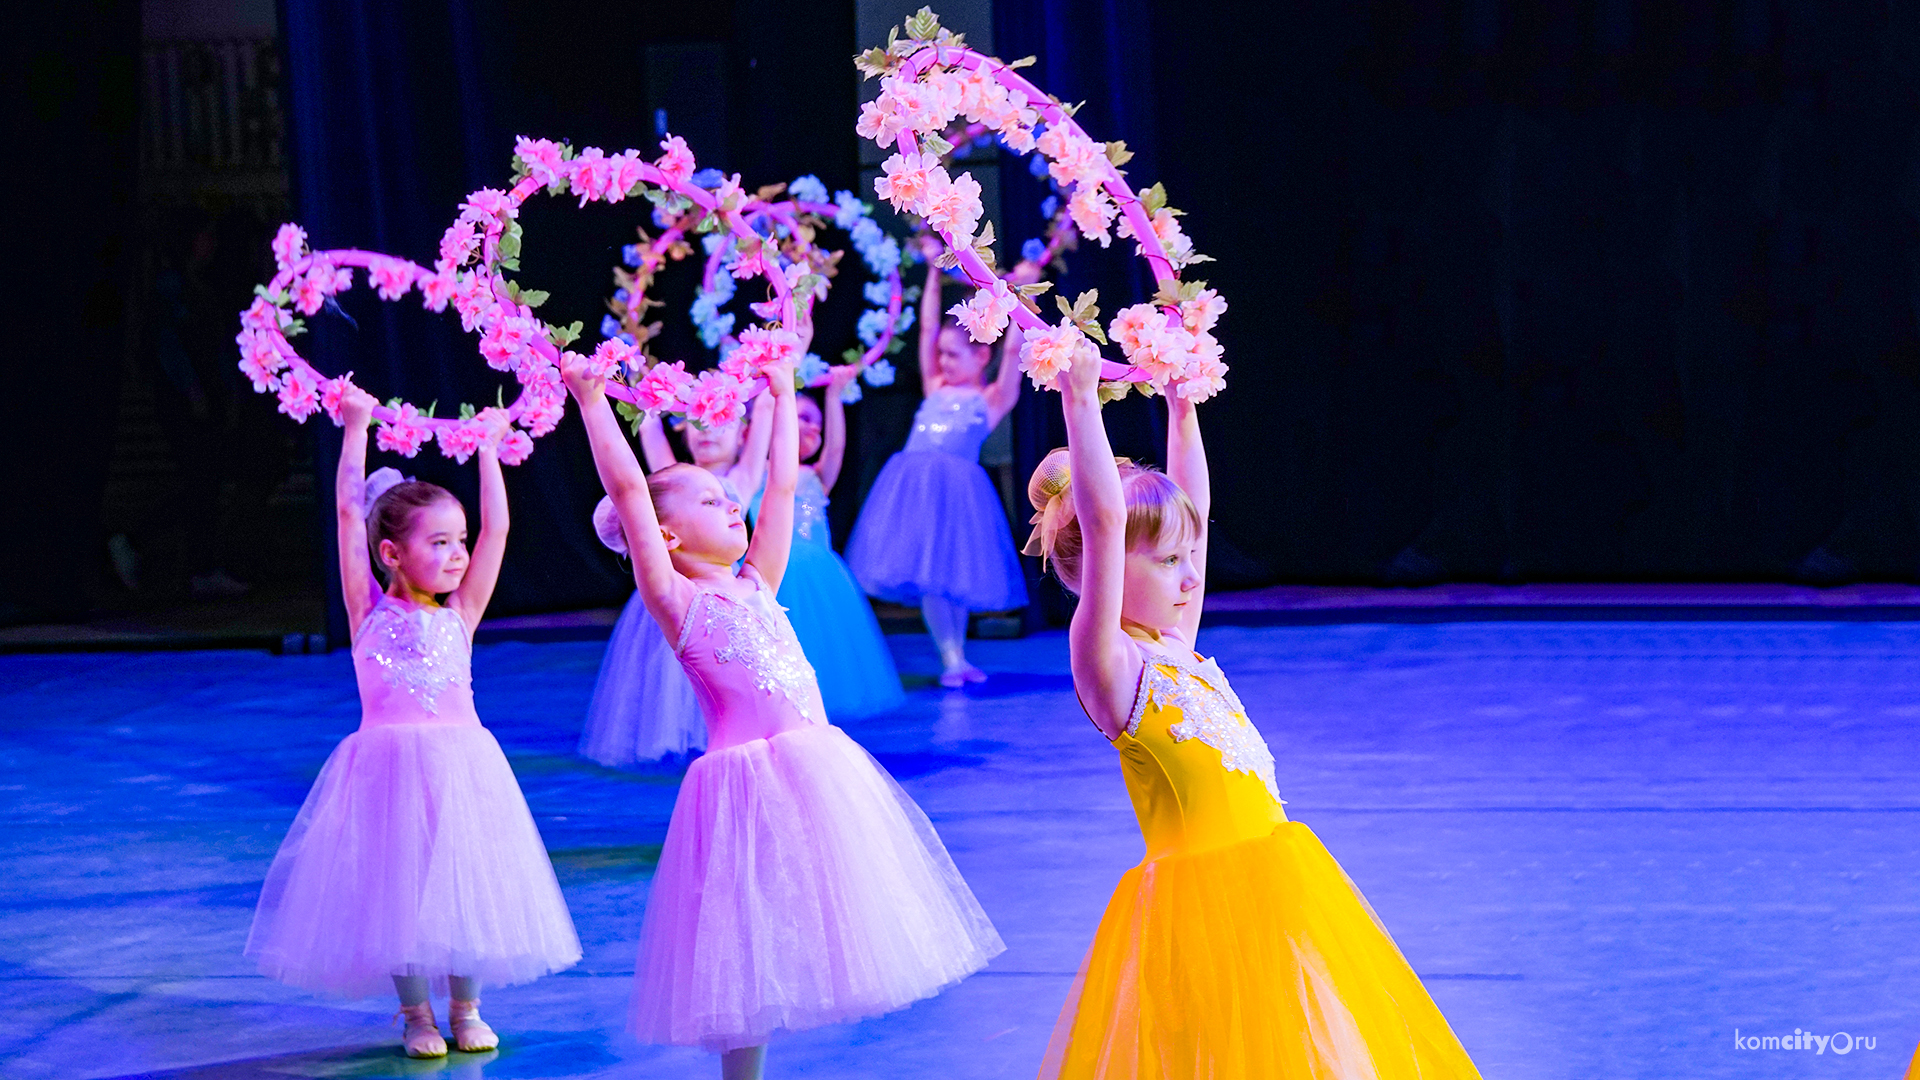 К волшебному миру балета прикоснулись зрители Комсомольска-на-Амуре на отчётном концерте студии «Balletin»